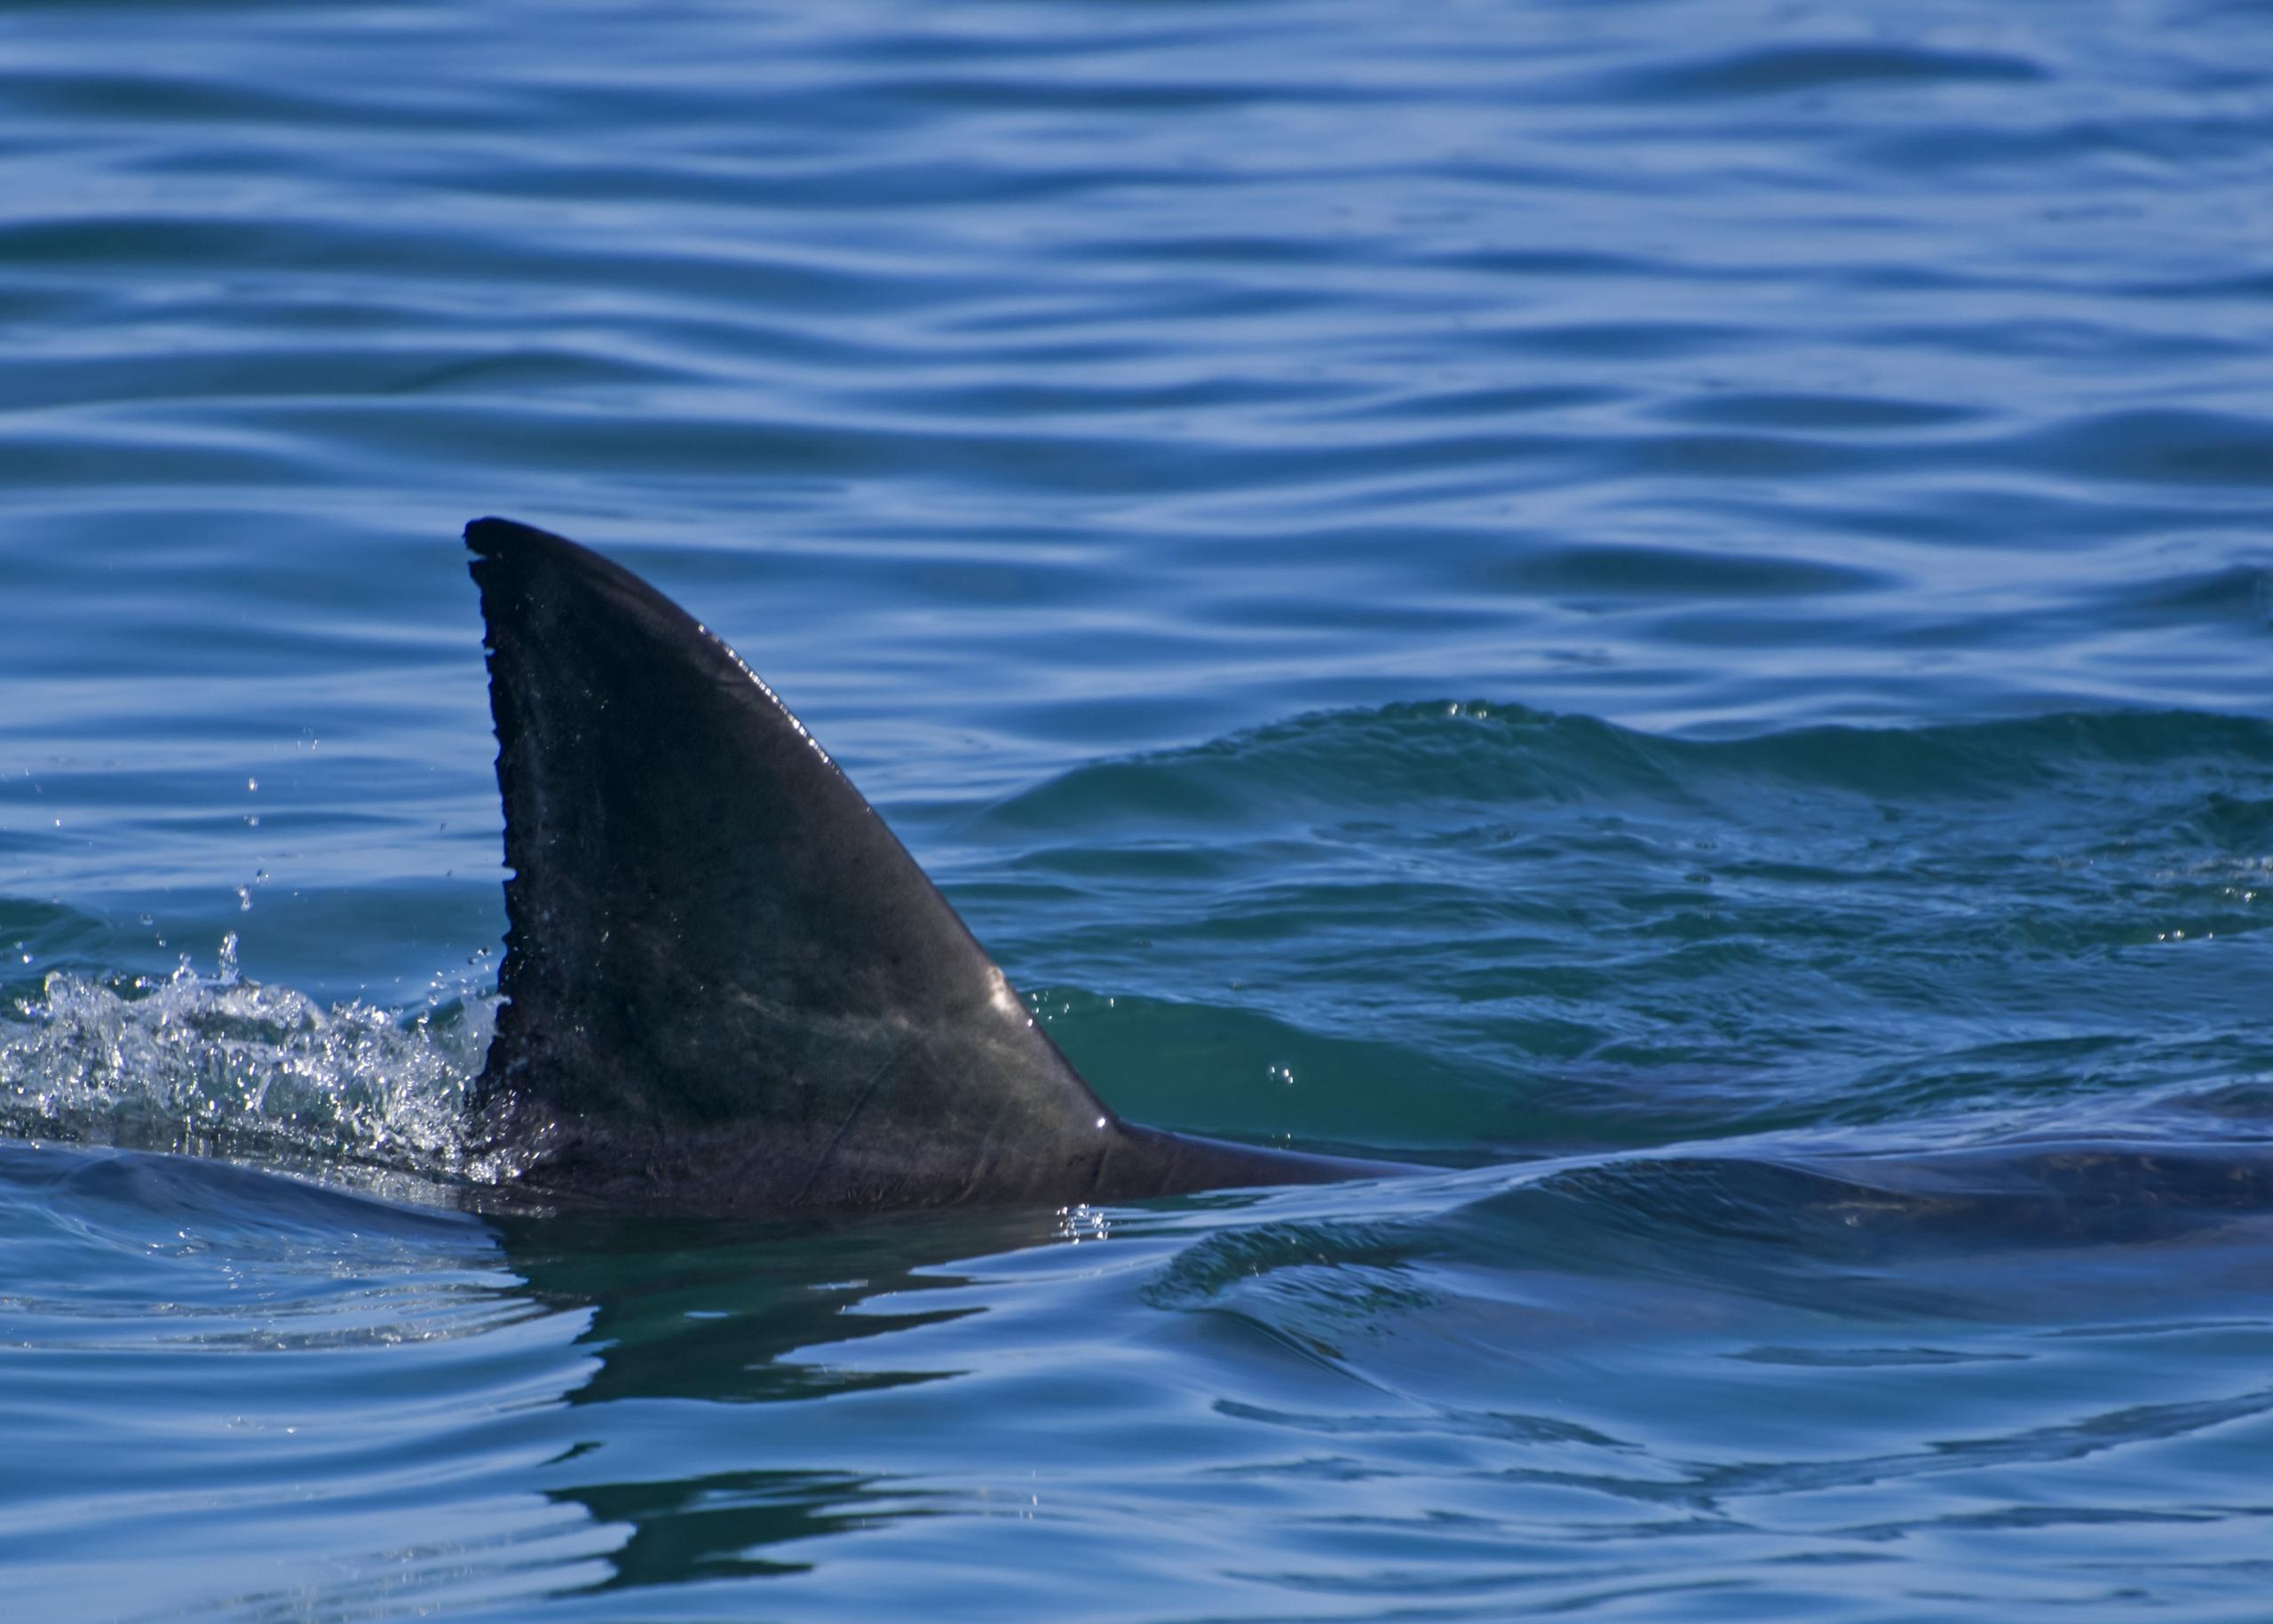 Las playas de Florida suelen ser escenario de ataques de tiburones, una de las últimas registrada en diciembre pasado.